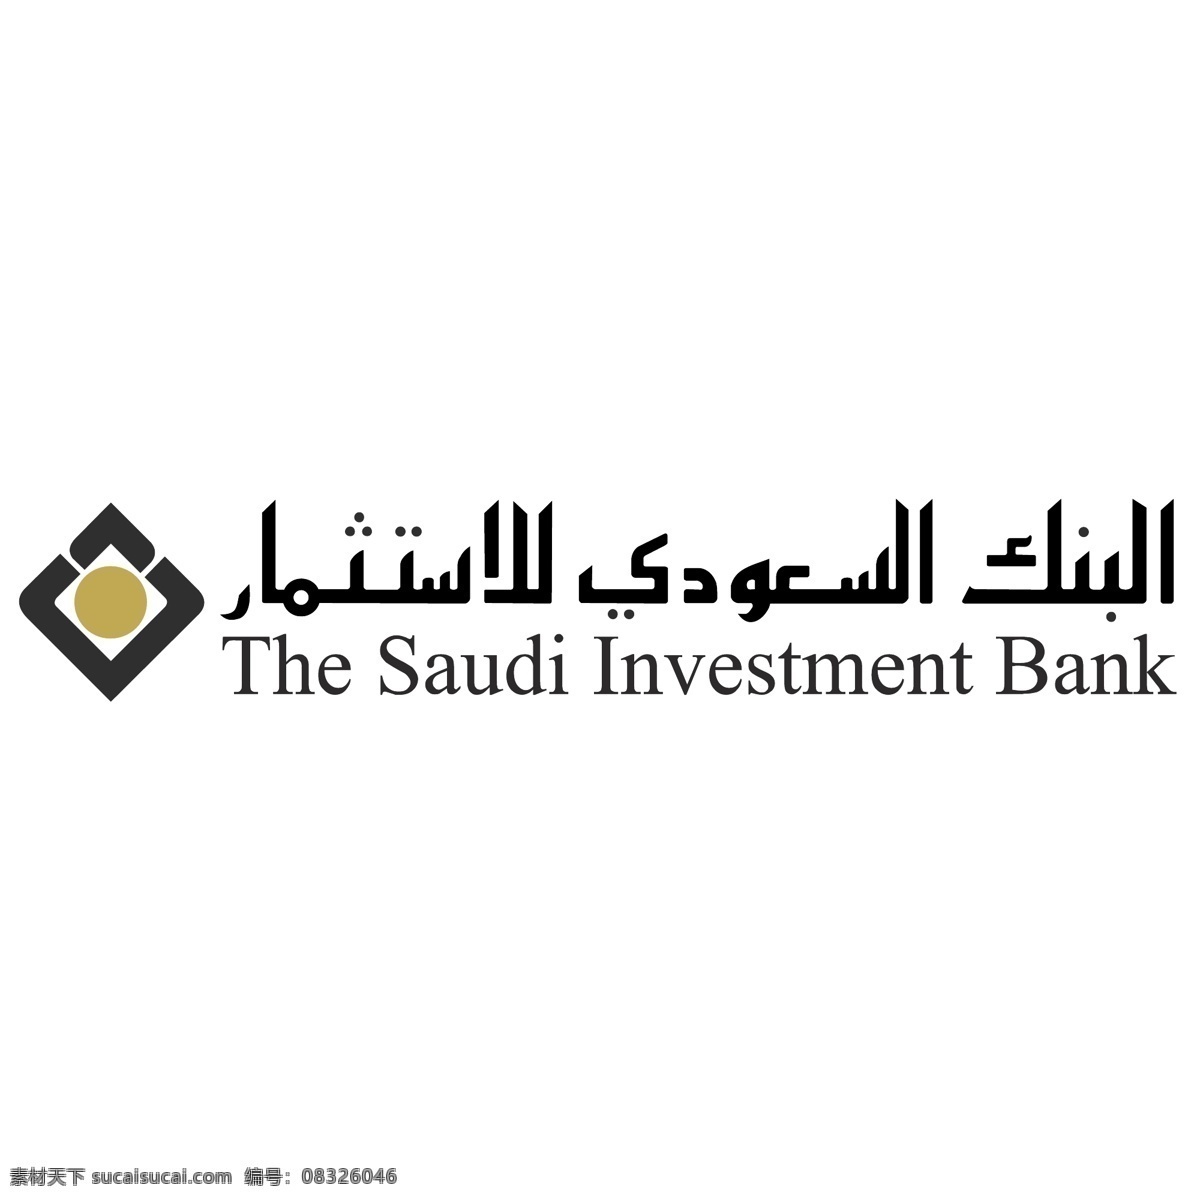 沙特 投资银行 免费 标志 自由 psd源文件 logo设计